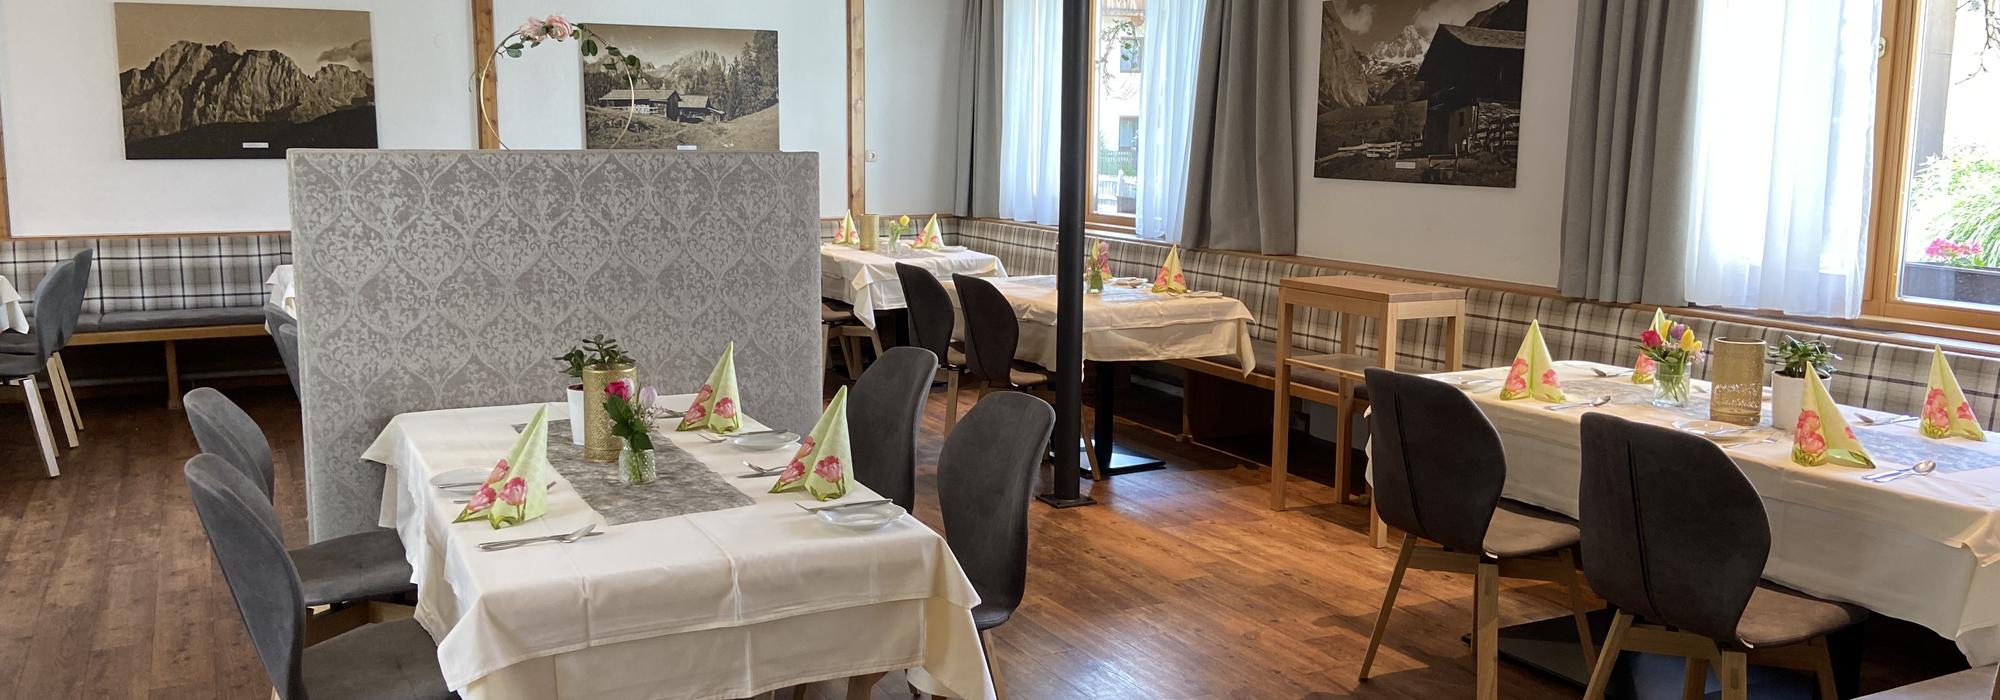 Dining room in the Dolomitenhof